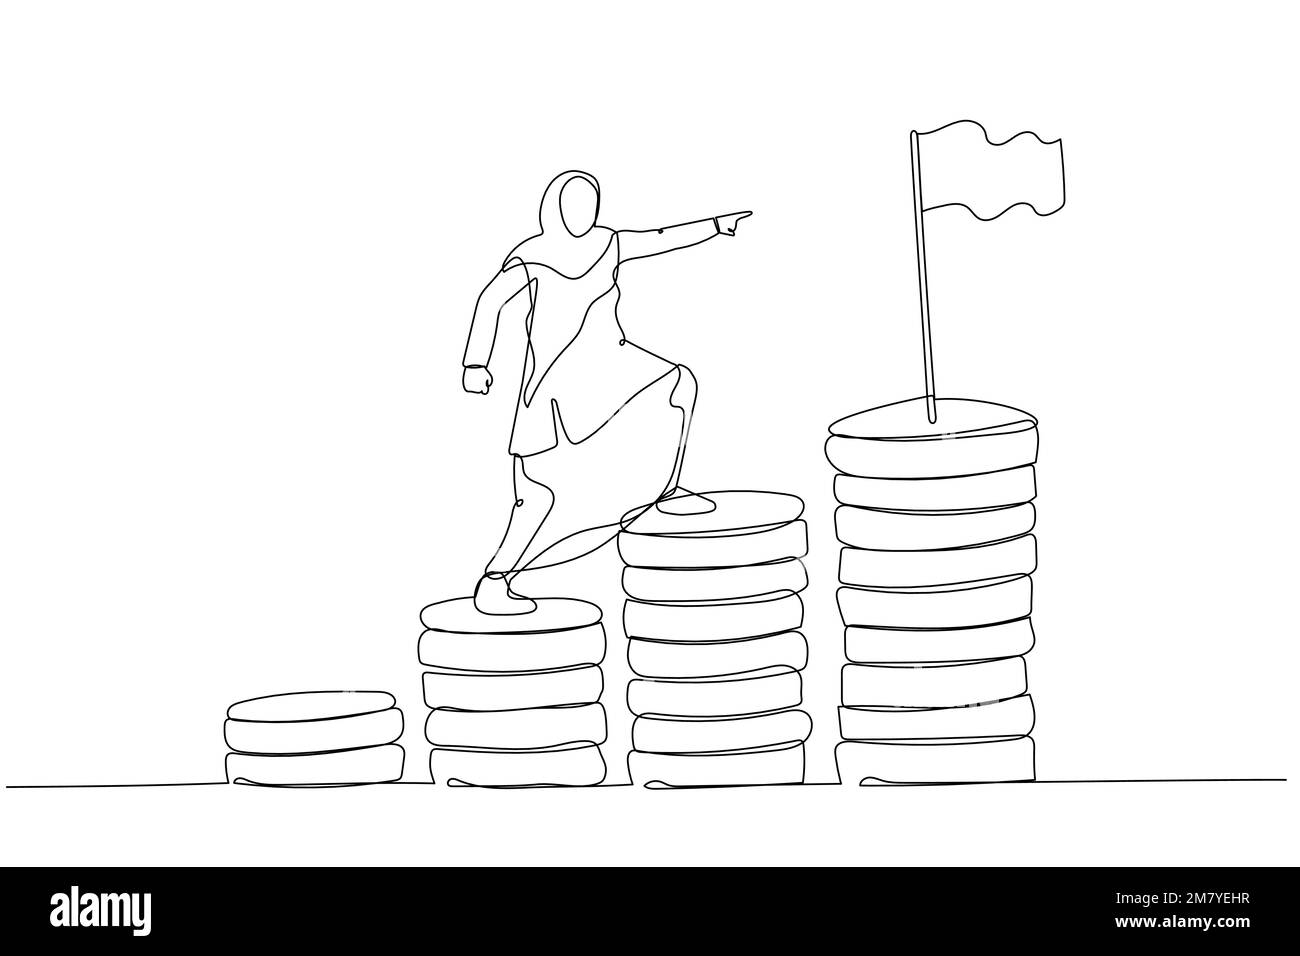 Cartoon mit muslimischer Unternehmerin, die Geld klettert, um das finanzielle Ziel zu erreichen. Einzeiliges Kunstdesign Stock Vektor